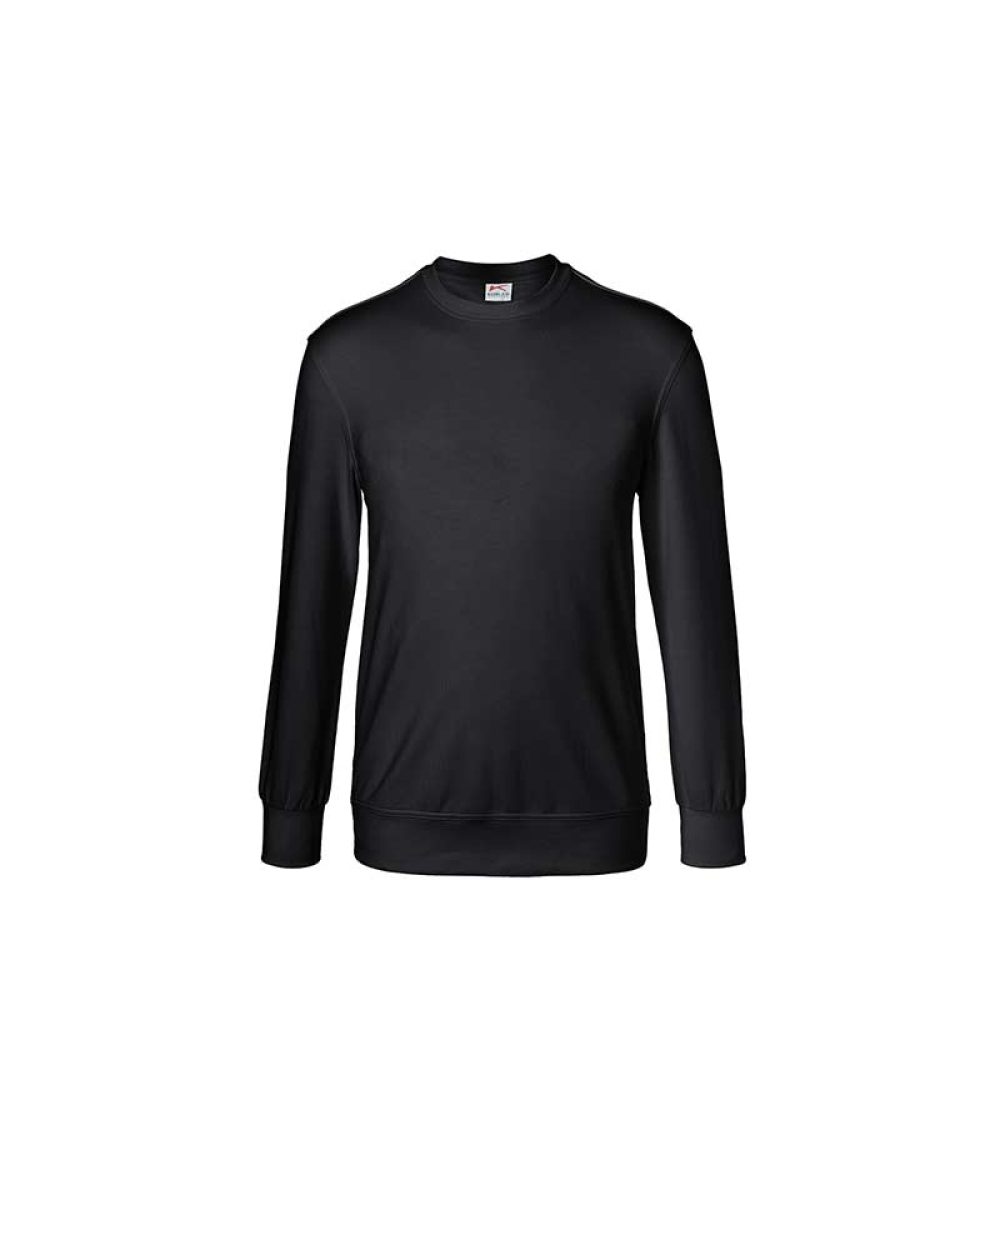 kuebler-sweatshirt-shirts-5023-6330-99